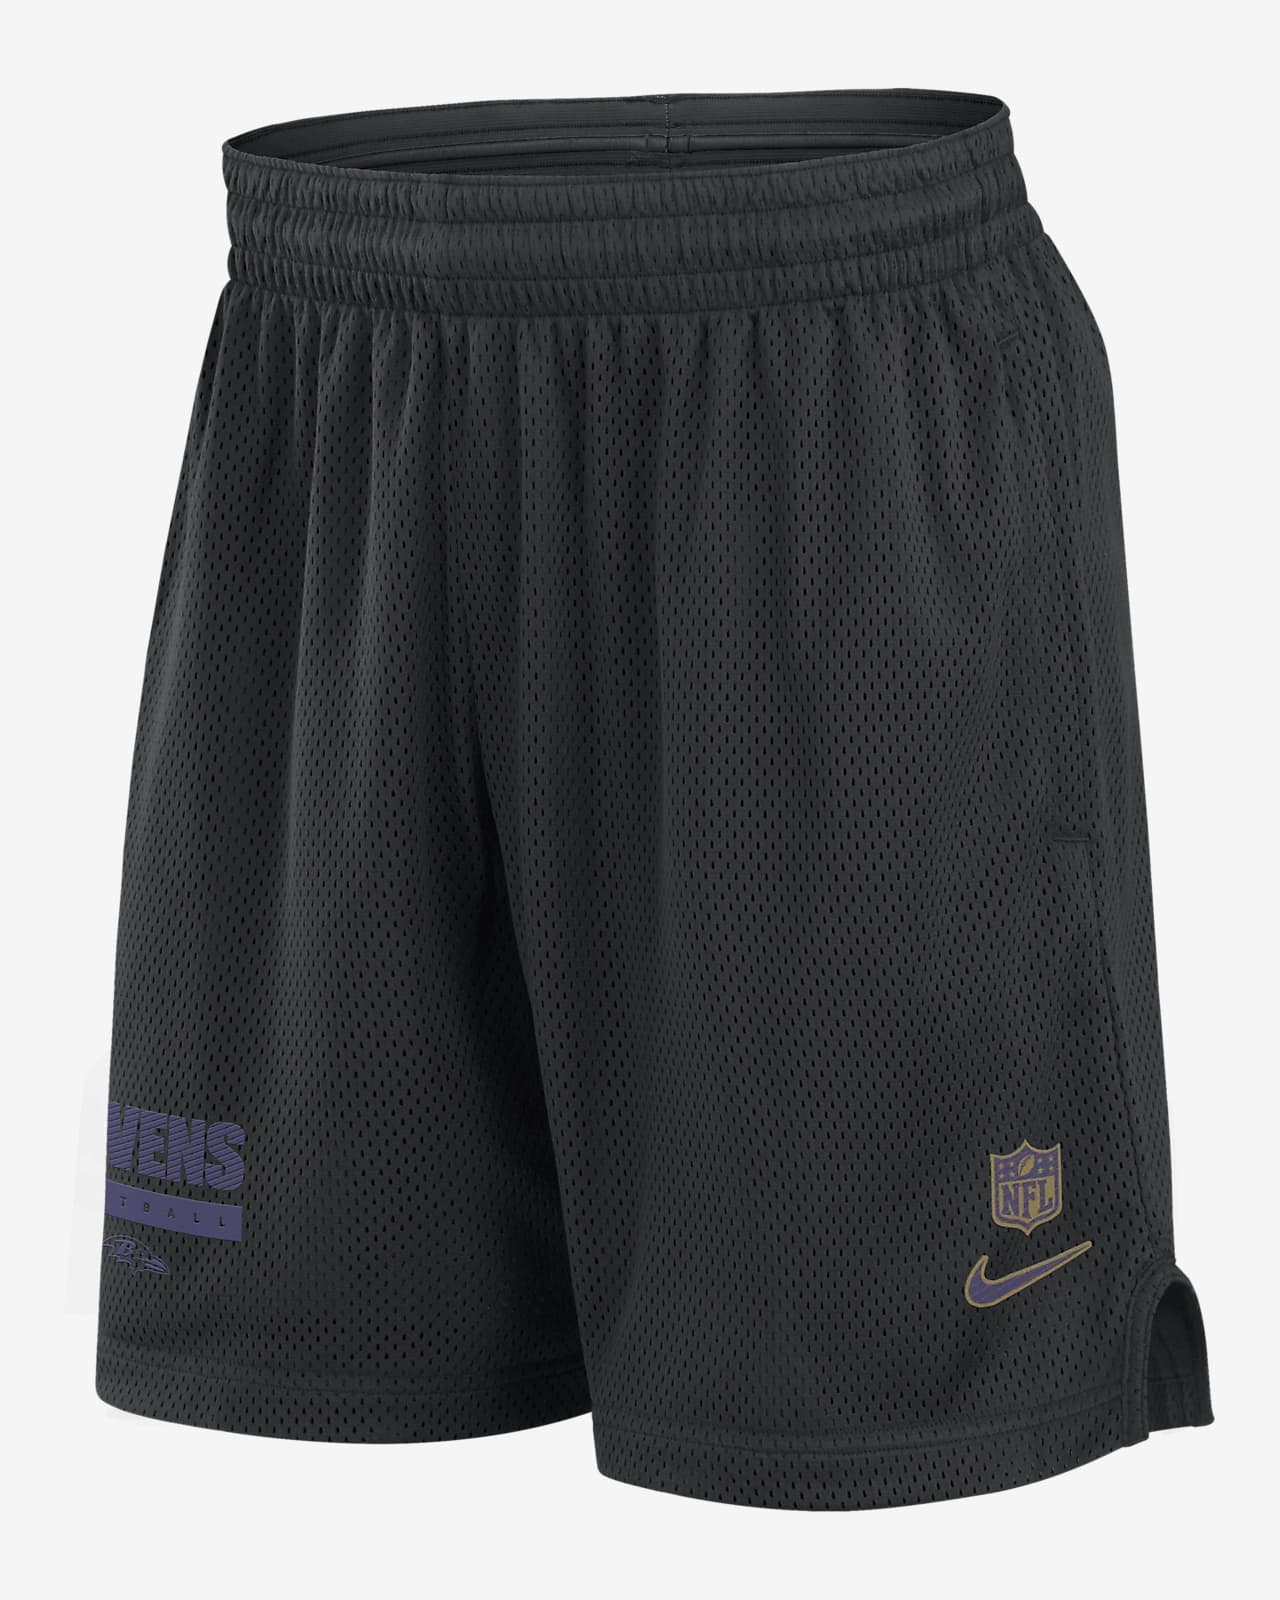 Shorts Nike Dri-FIT de la NFL para hombre Baltimore Ravens Sideline